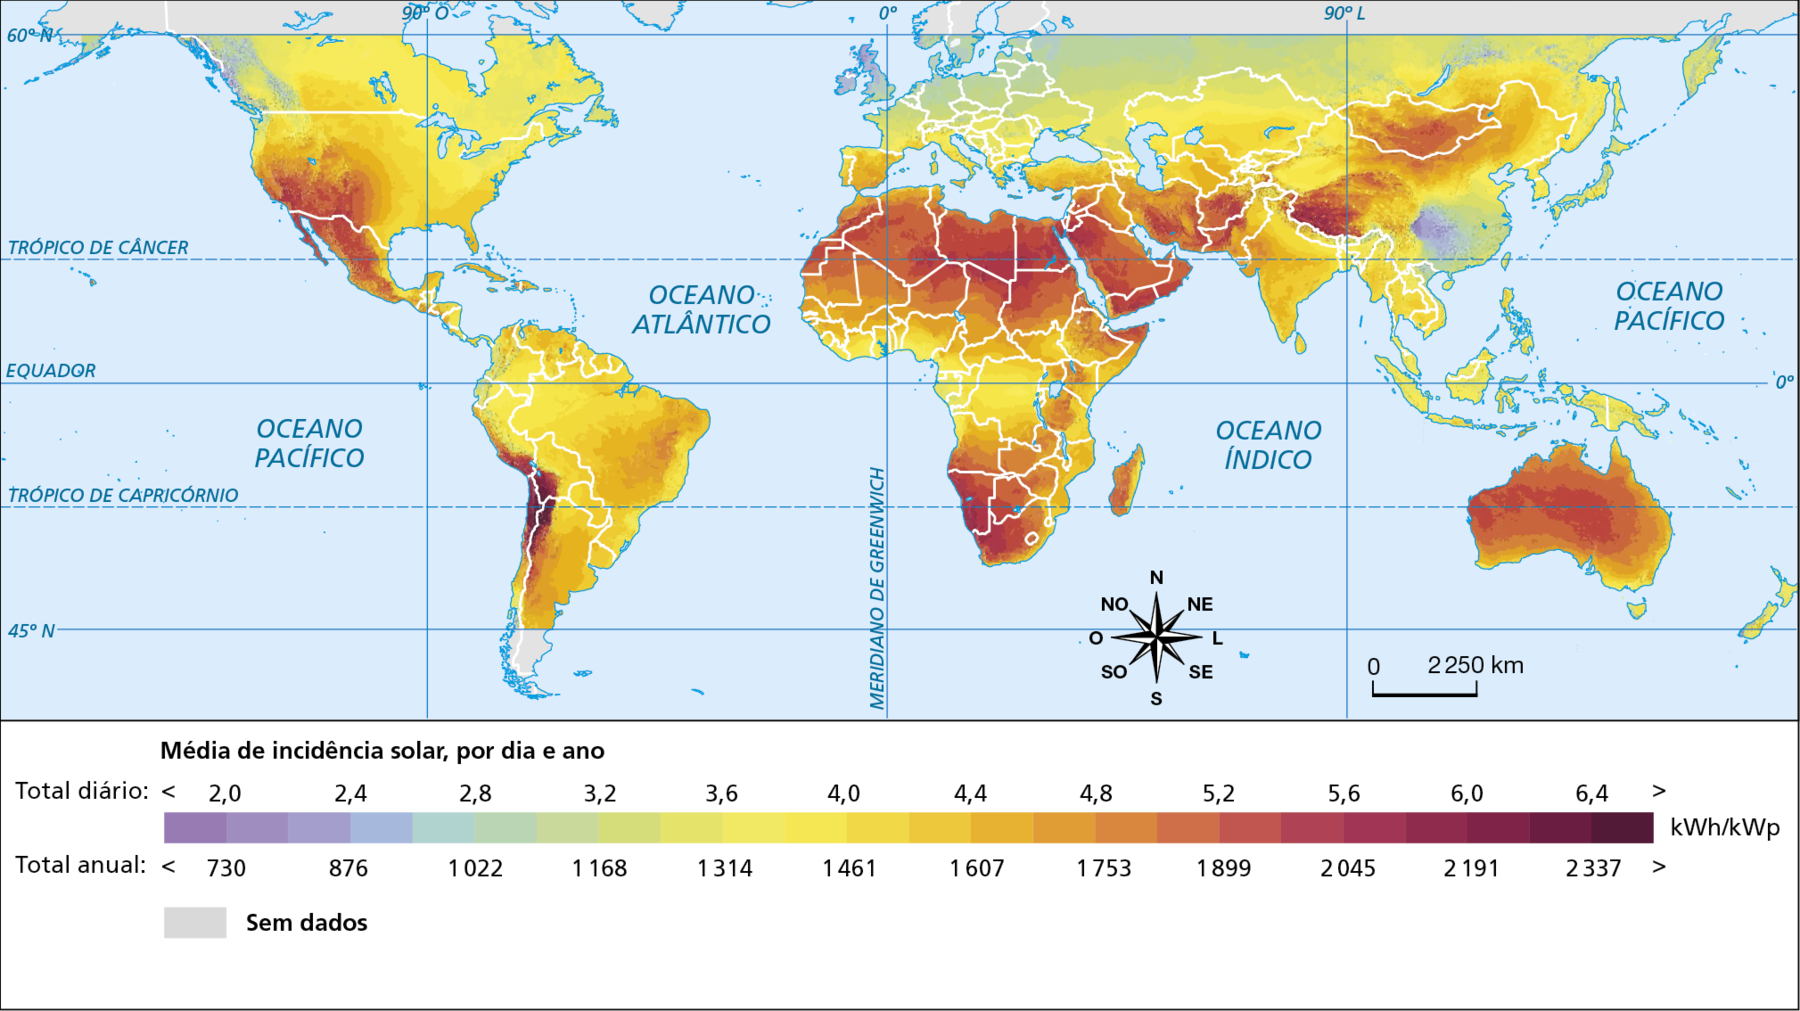 Mapa. Planisfério: potencial energético solar, 2021. 
Planisfério mostrando a média de incidência solar, por dia e ano: Total diário. Menor que 2,0 quilowatt-hora ou quilowatt-pico; total anual menor que 730 quilowatt-hora ou quilowatt-pico: oeste do Canadá, leste da China e norte do Reino Unido. 
Total diário entre 2 e 3,2 quilowatt-hora ou quilowatt-hora; total anual entre 730 e 1.168 quilowatt-hora ou quilowatt-pico: Rússia, Ucrânia, Finlândia, Suécia Noruega, Alemanha, Polônia, Belarus, Áustria e Hungria. 
Total diário entre 3,2 e 4,0 quilowatt-hora ou quilowatt-pico; total anual entre 1.168 e 1.461 quilowatt-hora ou quilowatt-pico: parte do Canadá, parte dos Estados Unidos, parte do Brasil, parte central da África, Grécia, Itália, Coreia do Norte e Coreia do Sul, parte do Cazaquistão, Sudeste Asiático; total diário entre 4 e 4,8 quilowatt-hora ou quilowatt-pico; total anual entre 1.461 e 1.753 quilowatt-hora ou quilowatt-pico: parte oeste dos Estados Unidos, parte leste do Brasil, parte da Argentina, parte central da África, Índia, Turquia, parte da China e Mongólia; total diário entre 4,8 e 6,0 quilowatt-hora ou quilowatt-pico; total anual entre 1.753 e 2.191 quilowatt-hora ou quilowatt-pico: parte Oeste dos Estados Unidos, México, Angola, África do Sul, Egito, Arábia Saudita, Irã, Afeganistão, parte da Mongólia, parte da China, Austrália, norte da África.
Total diário entre 6 e mais de 6,4 quilowatt-hora ou quilowatt-pico; total anual entre 2.191 e mais de 2.337 quilowatt-hora ou quilowatt-pico: norte do Chile, sul da Bolívia, sul do Peru,  Namíbia, África do Sul, Sudão, Egito, região sul da China. 
Sem dados: Groenlândia, Alasca, região norte do Canadá e da Rússia, região sul da América Latina. 
Na parte inferior, rosa dos ventos e escala de 0 a 2.250 quilômetros.